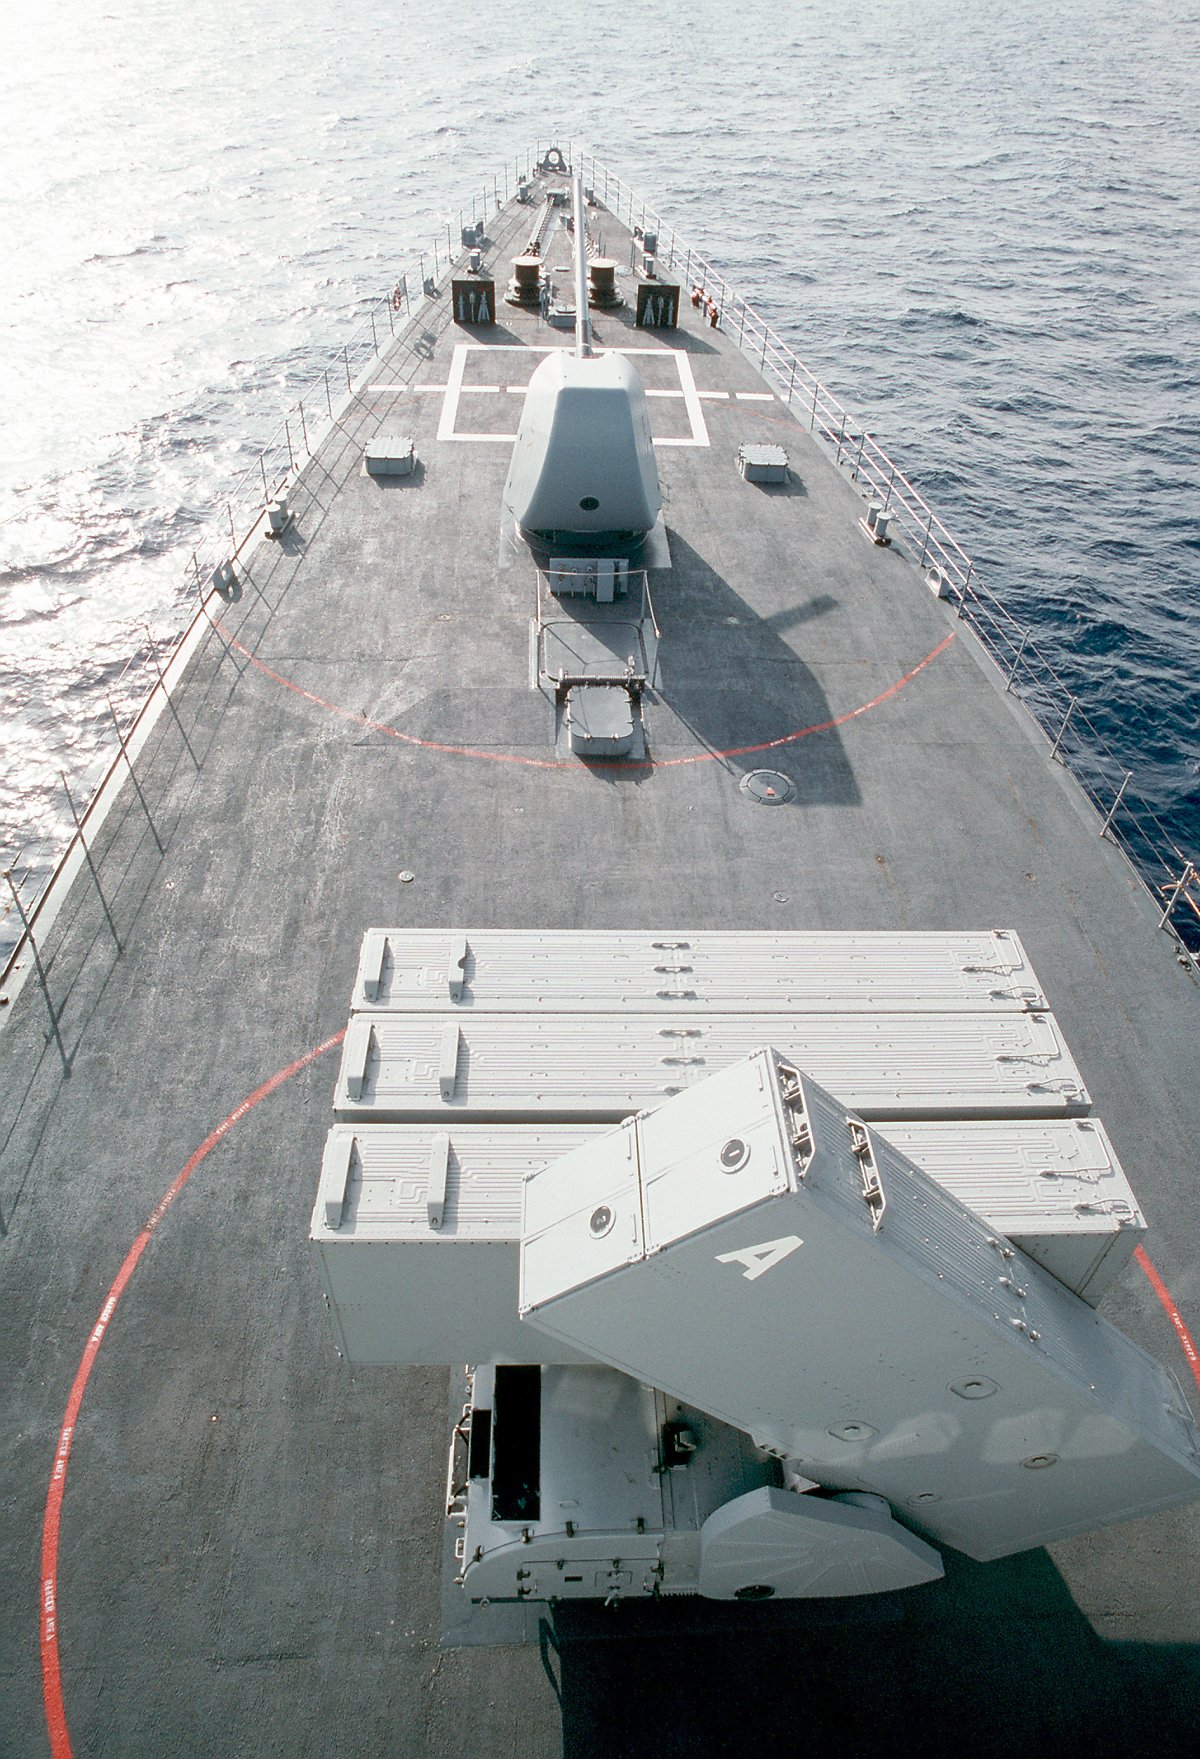 8연장 발사기에 수납되어 있는 ASROC 대잠로켓은 적 잠수함을 공격하는 주요 무장이다. <출처 : 미 해군>